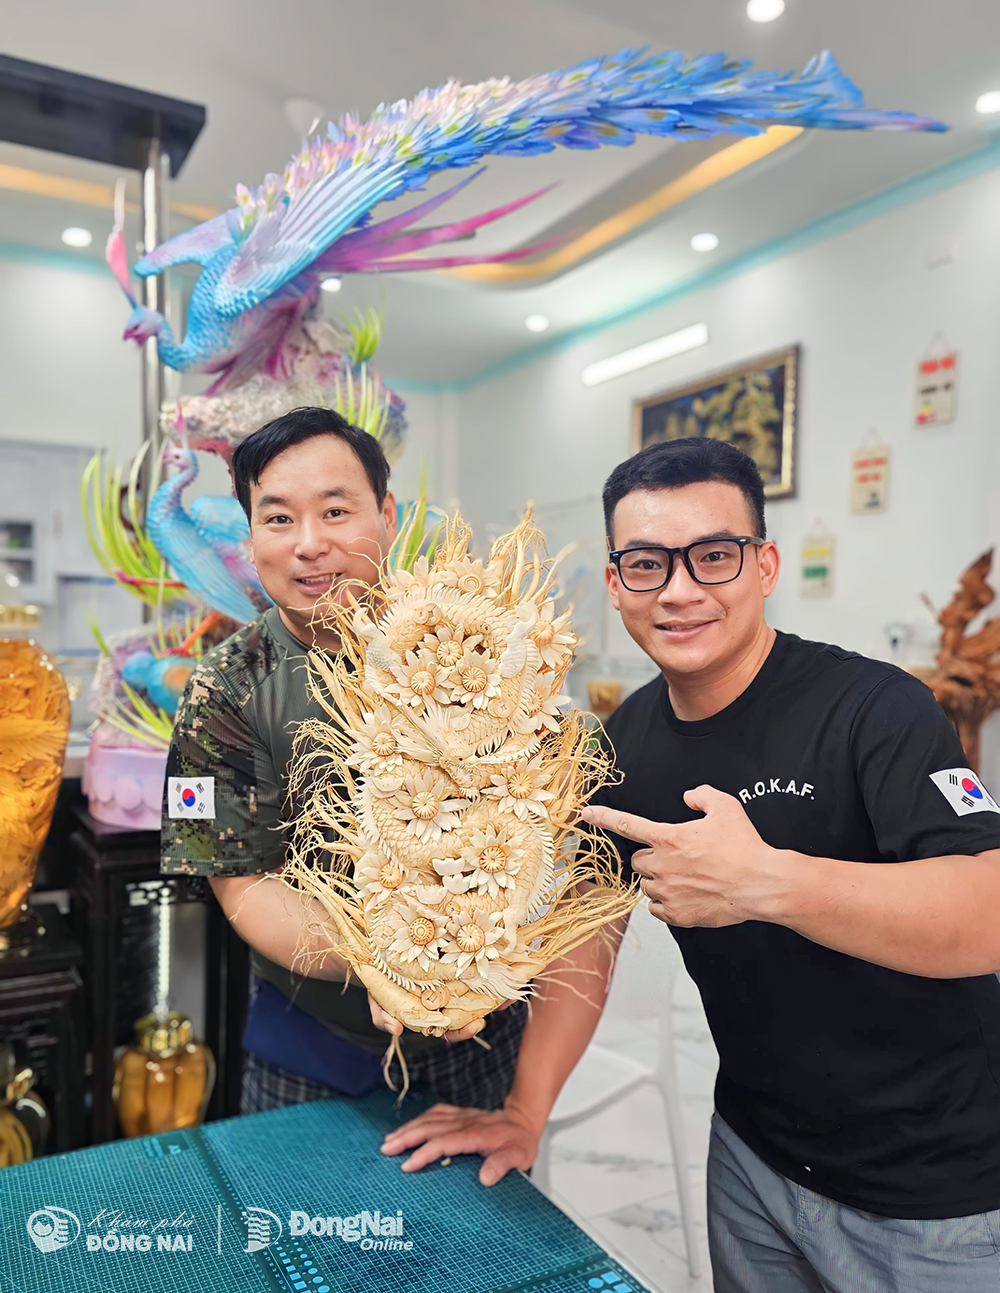 Cận cảnh ‘siêu phẩm’ chạm khắc hình rồng chế tác tại Biên Hòa ở Đồng Nai đã xuất khẩu đi nước ngoài- Ảnh 5.